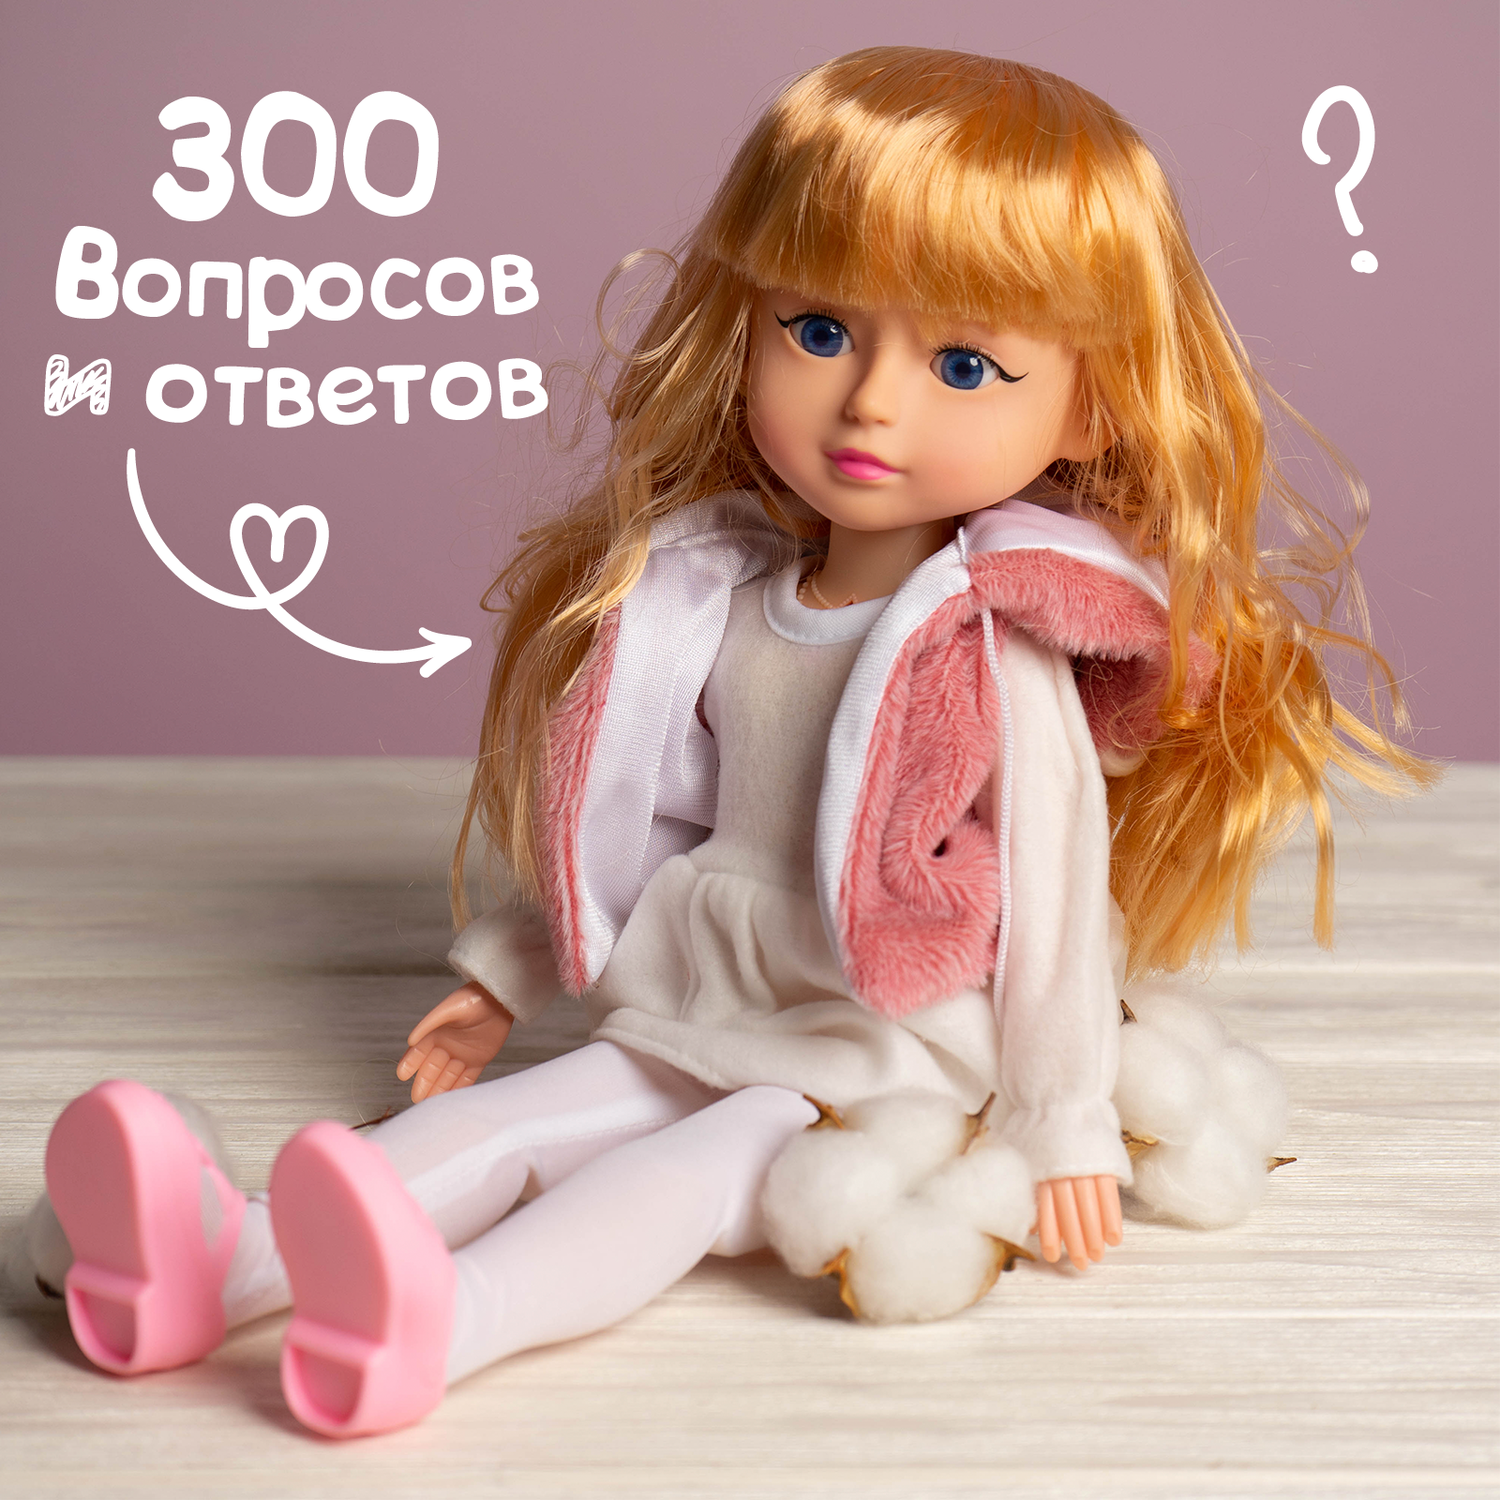 Кукла интерактивная Happy Valley София 300 вопросов и ответов на них 6872164 - фото 2